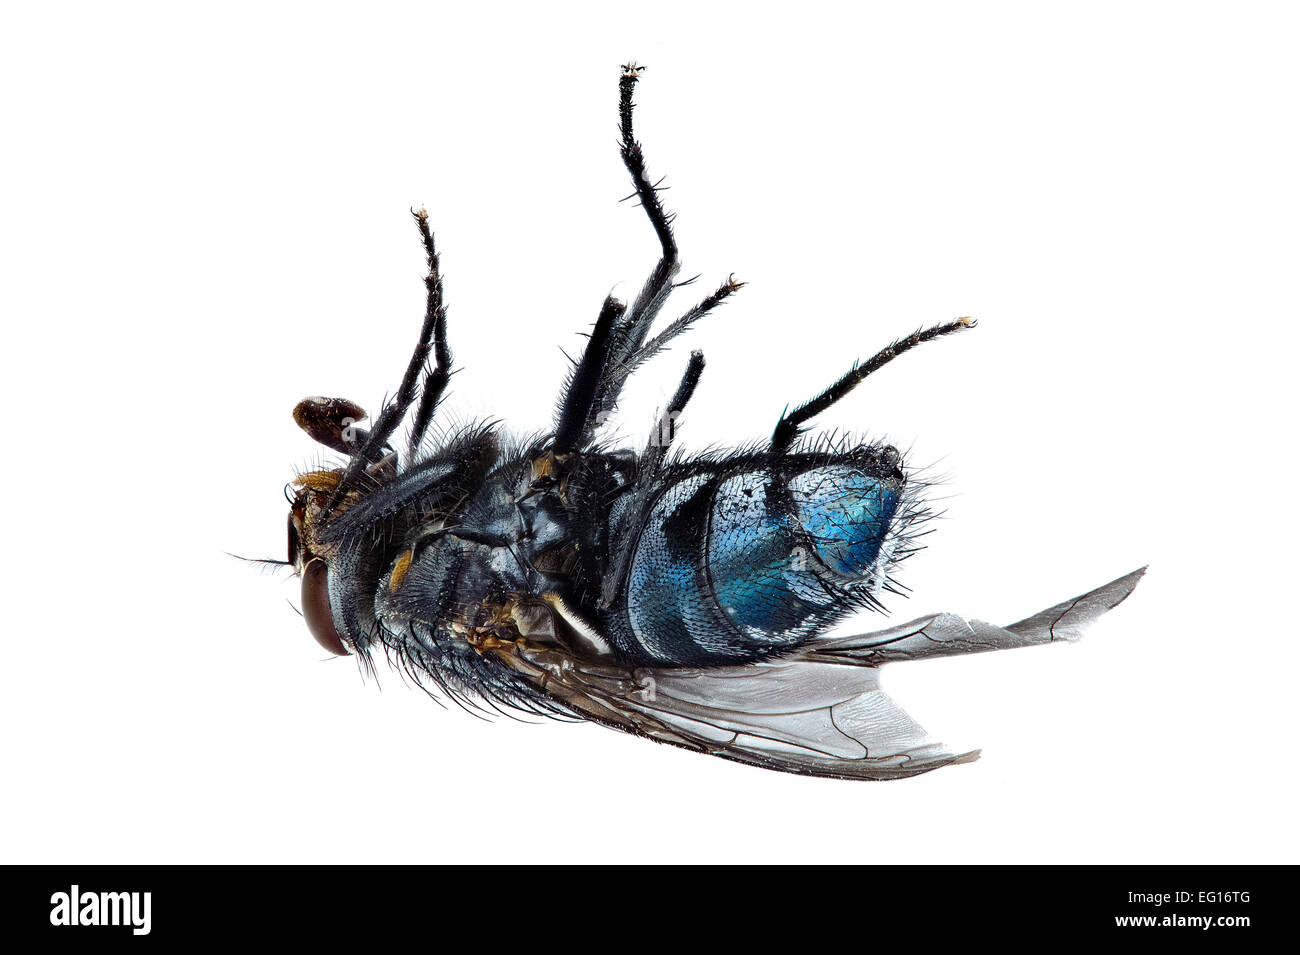 La messa a fuoco immagine sovrapposta di mosca morta sulla sua schiena bluebottle Calliphora vomitoria tutti di insetto è messa a fuoco Foto Stock